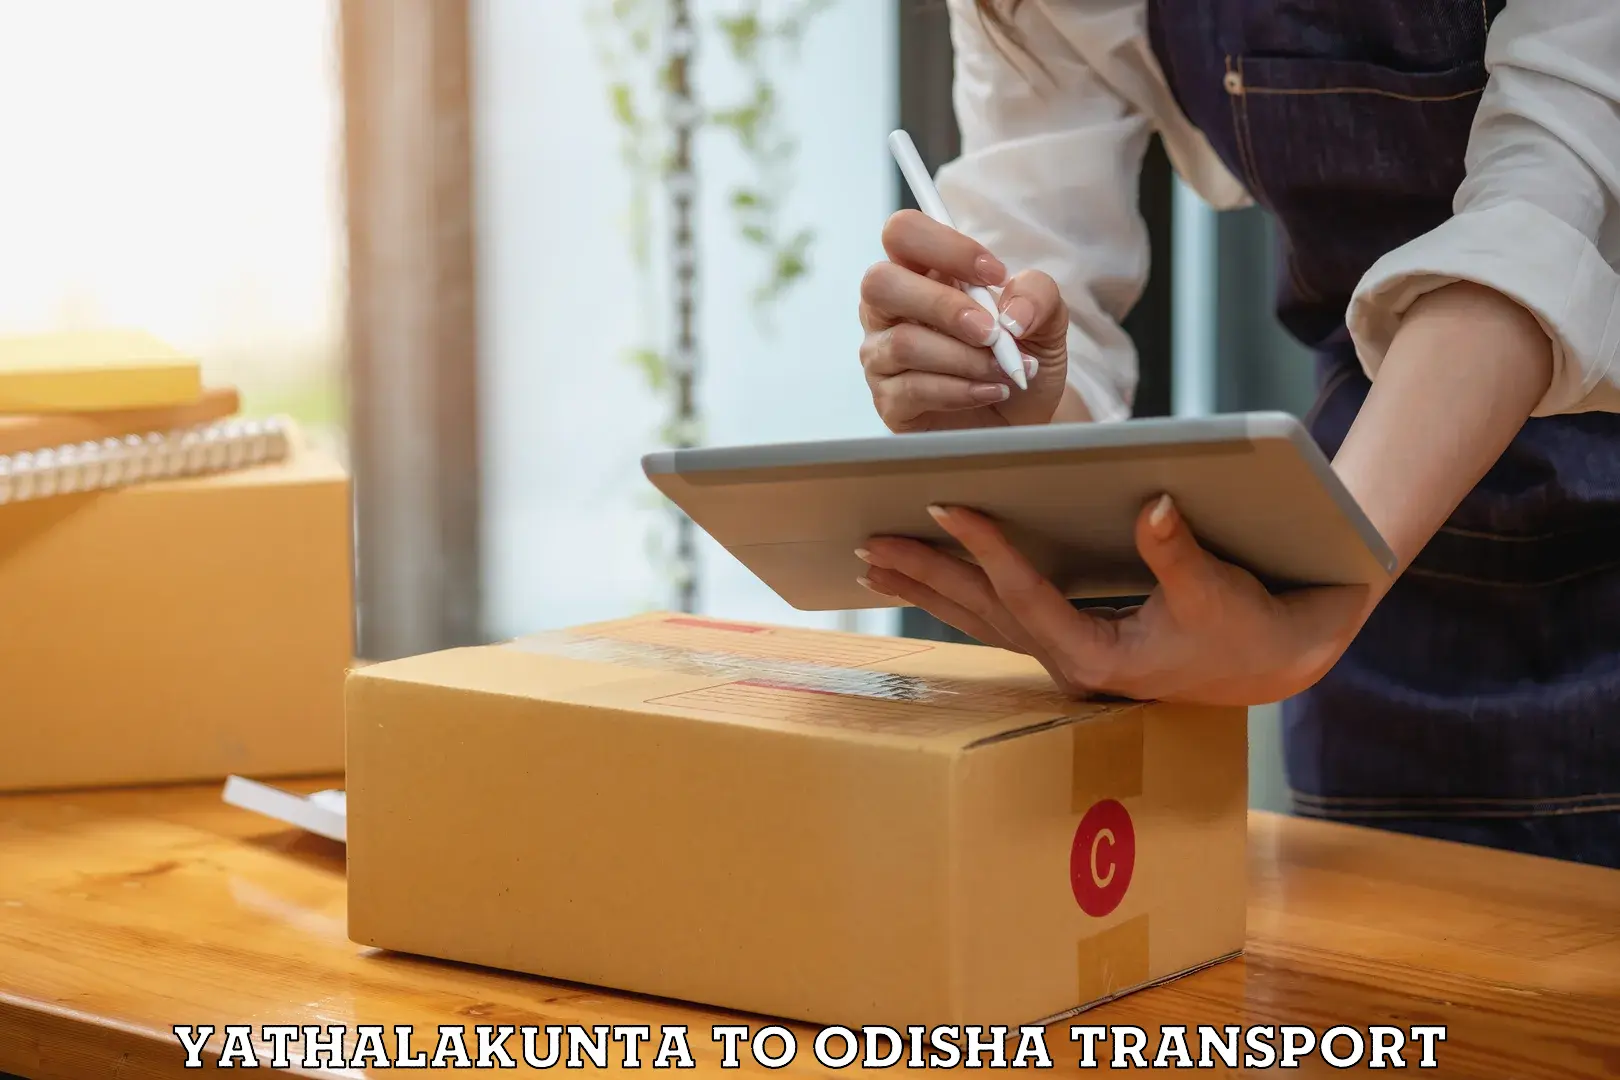 Lorry transport service Yathalakunta to Telkoi